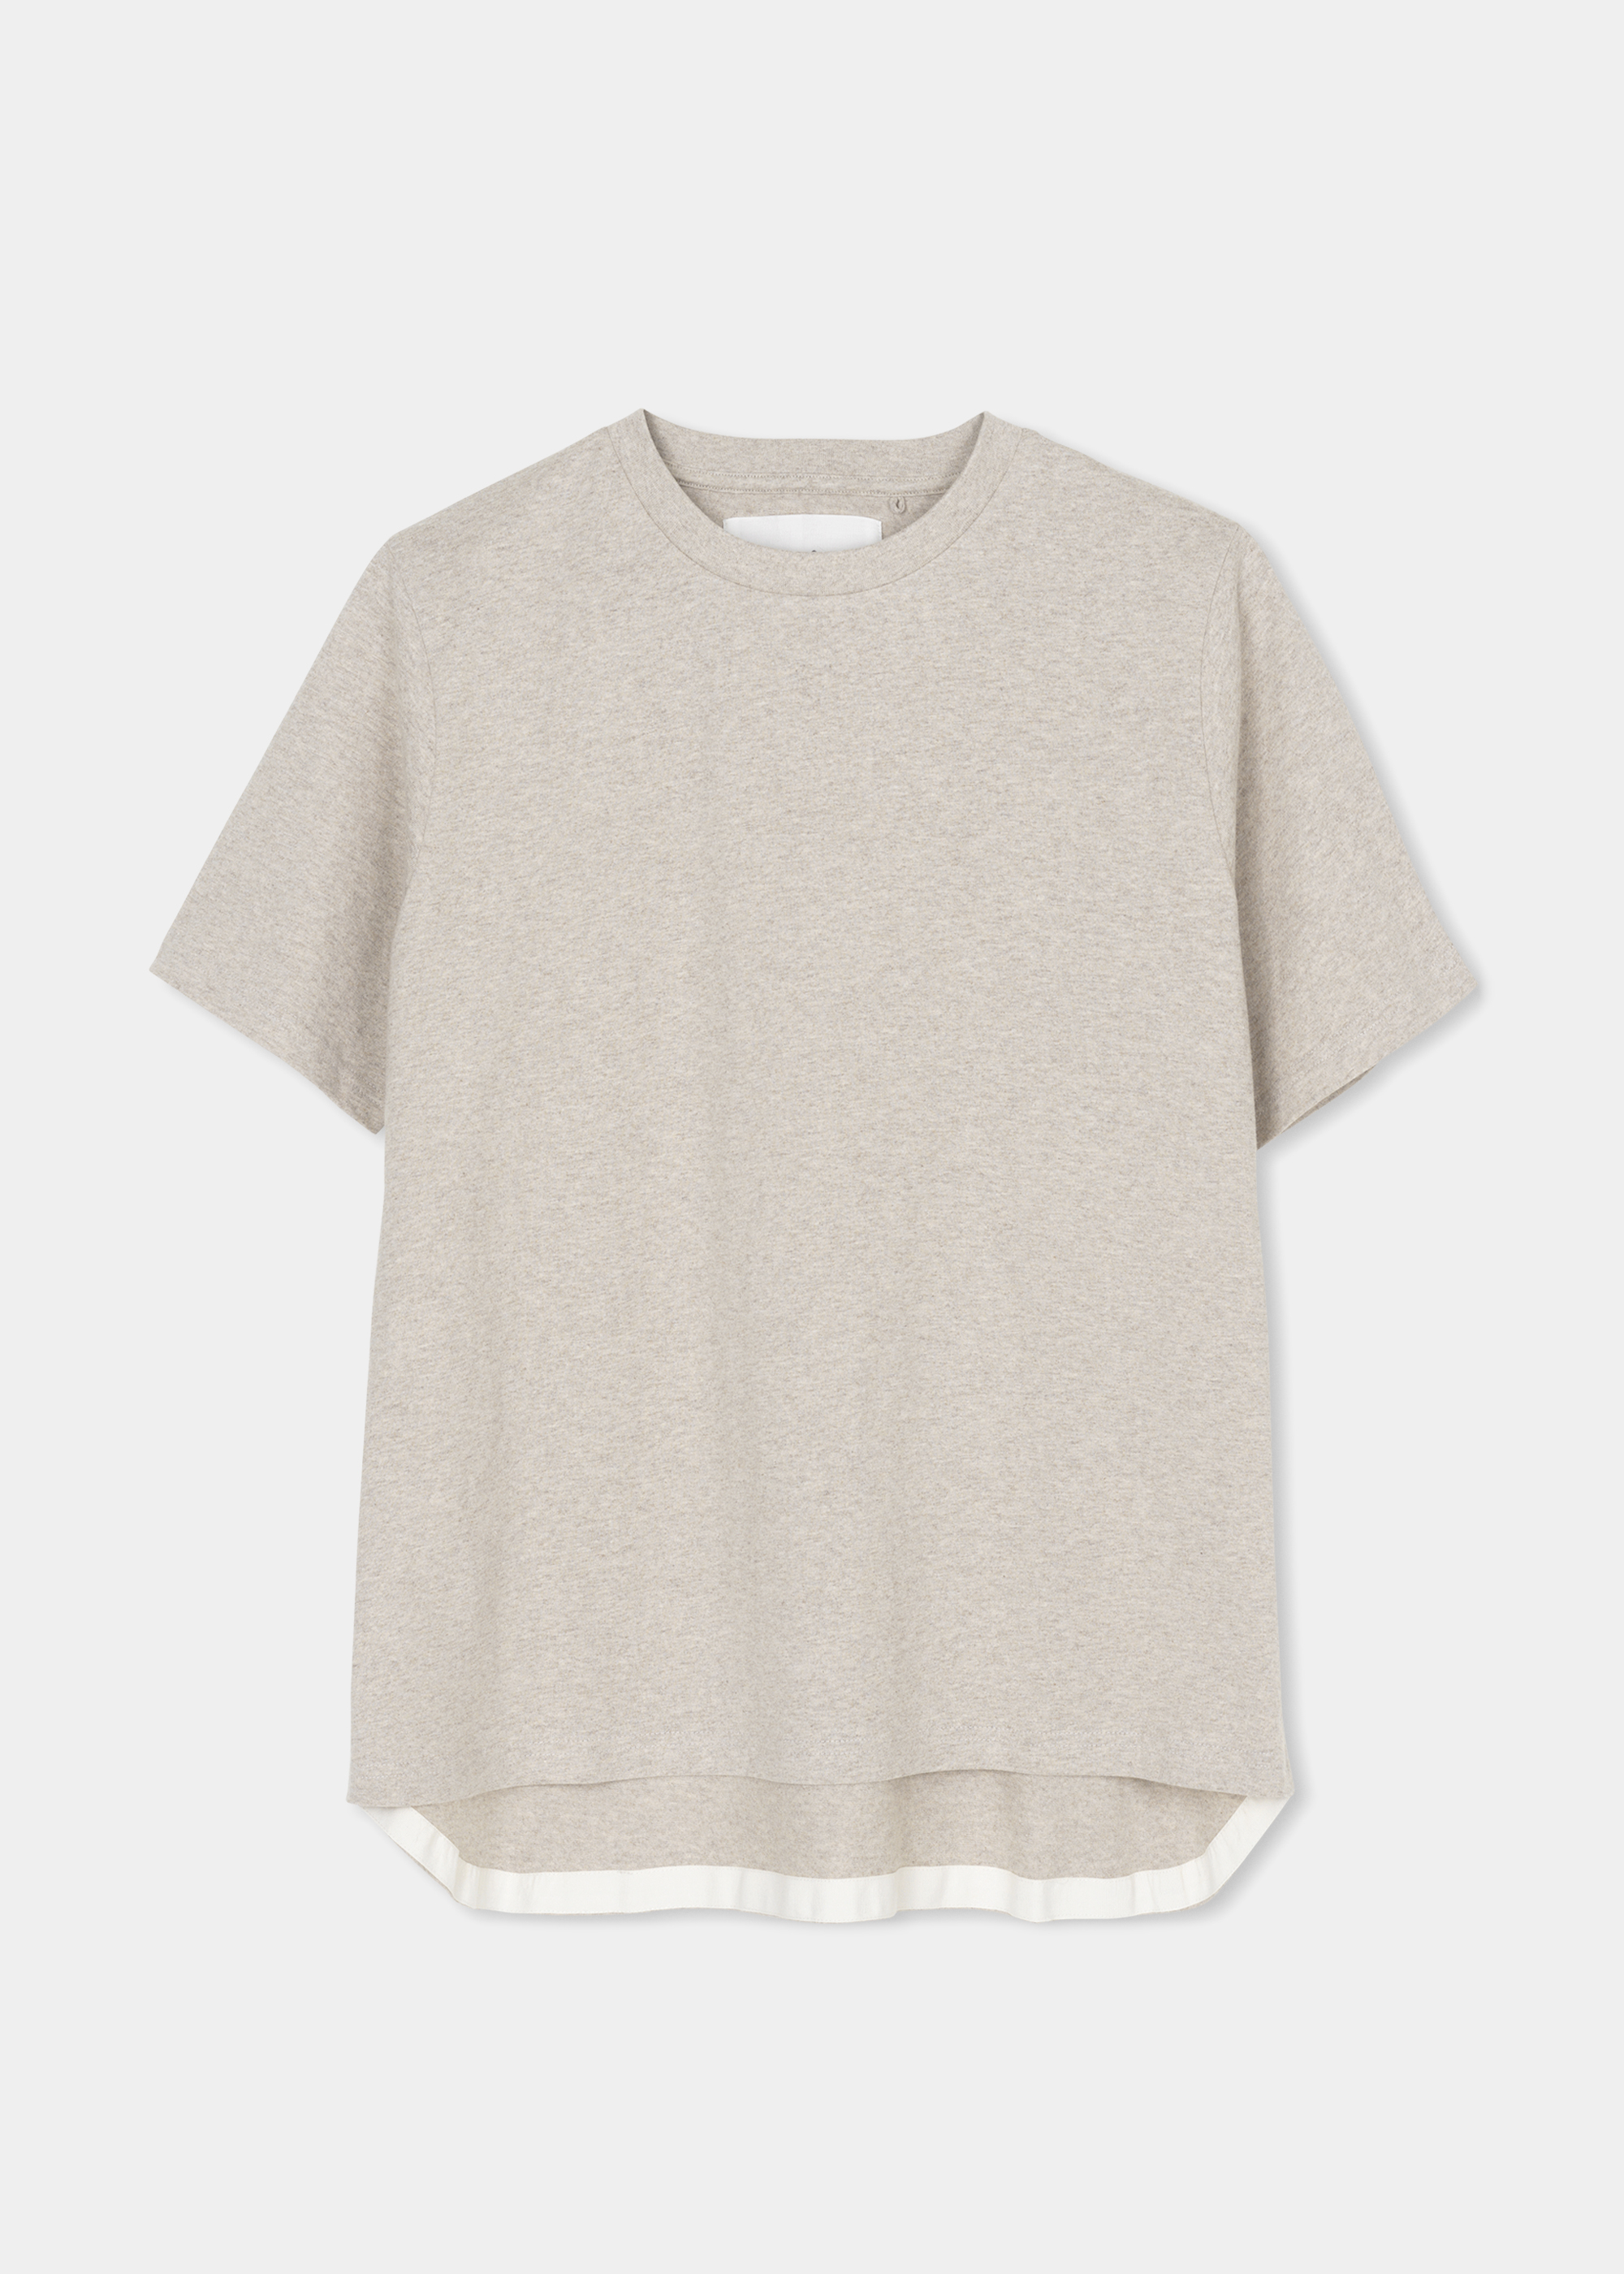 Blusen & T-Shirts - T-shirt - boxy